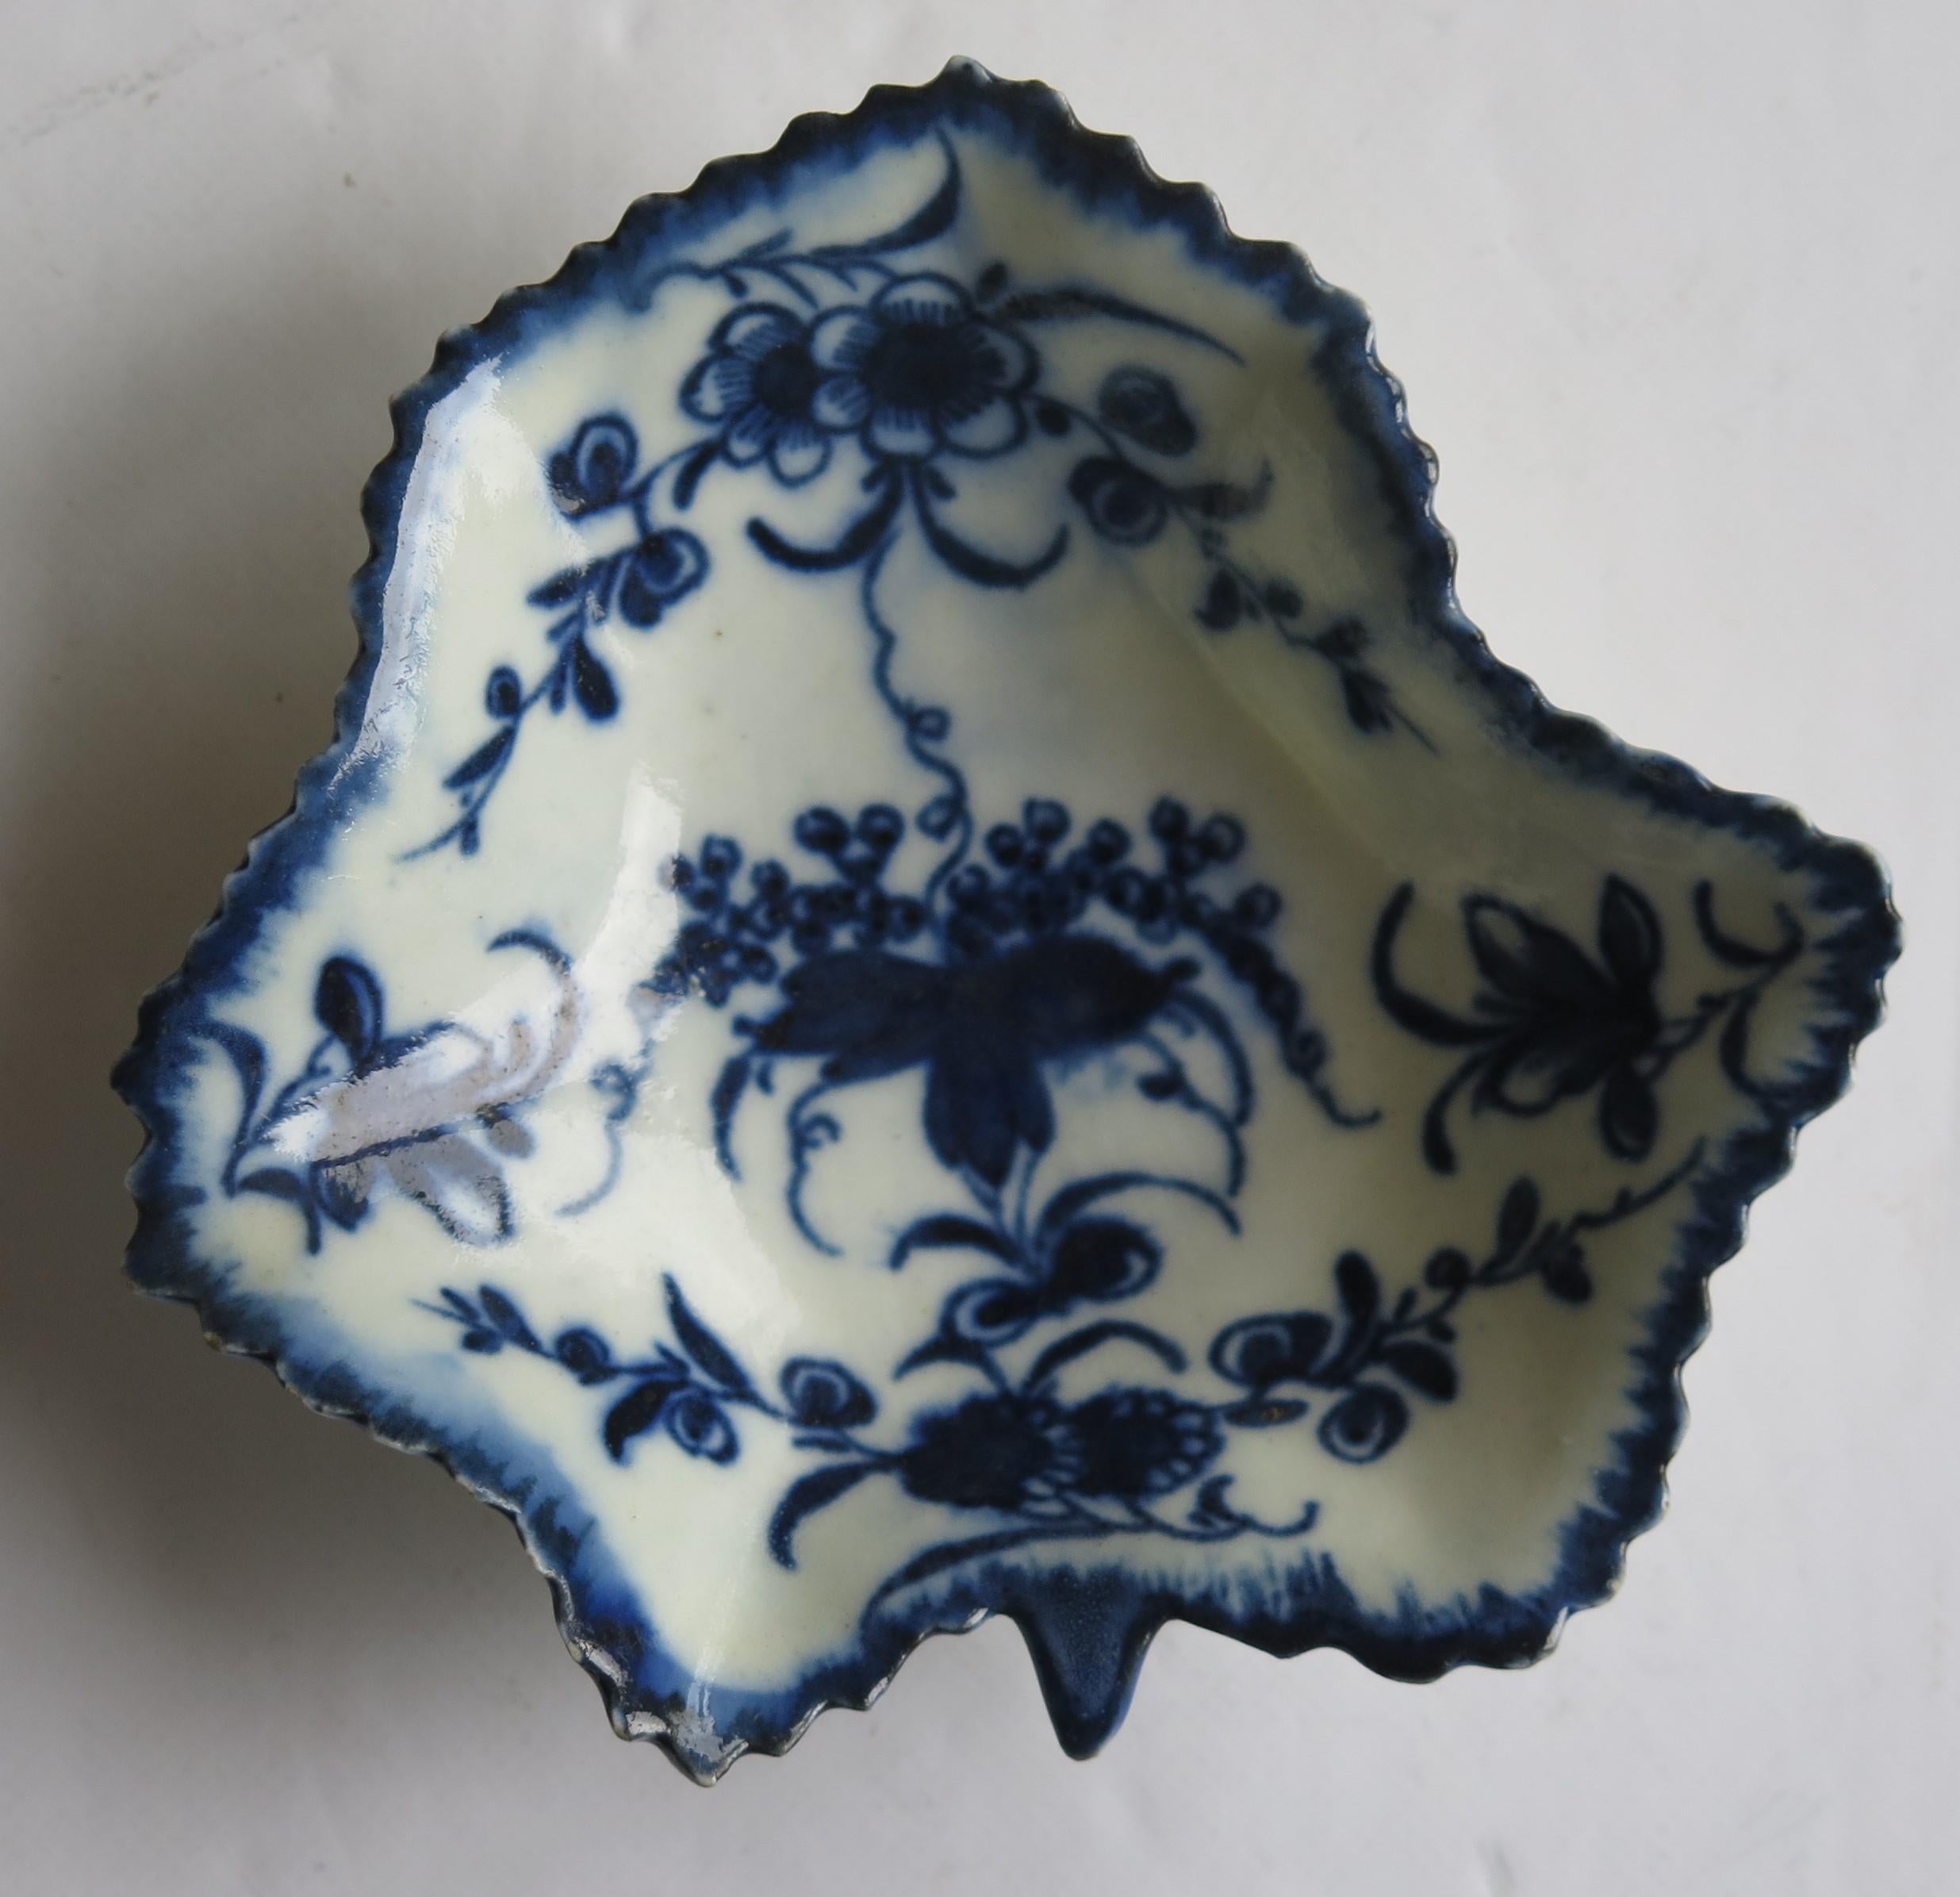 Dies ist eine sehr gute frühe, erste Periode (Dr. Wall), Worcester Porzellan blattförmige Pickle Dish in einem tiefen Kobaltblau Blumenmuster mit einem Crescent Marke an der Basis. aus den Jahren 1770 bis 1775.

Dies ist ein gut getöpfertes,